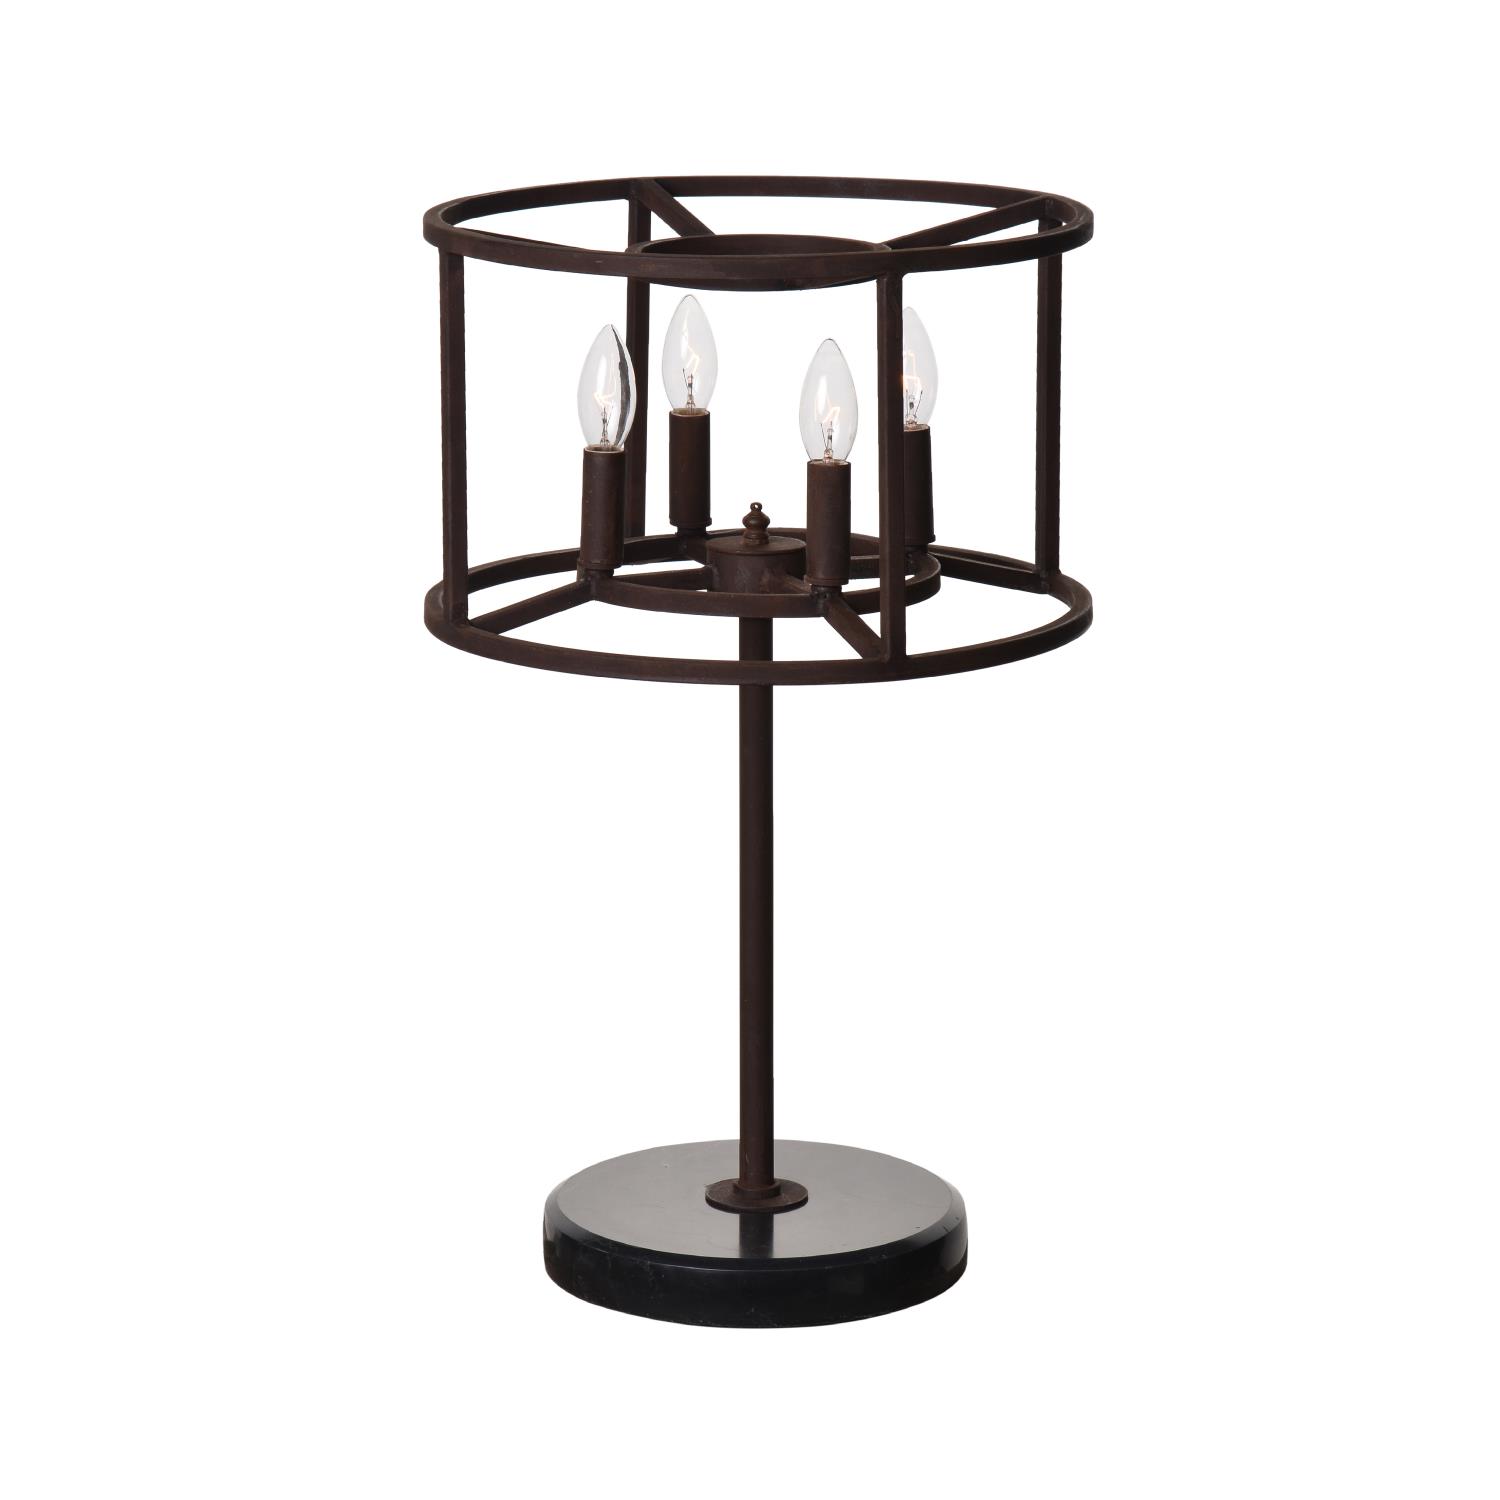 A CROWN TABLE LAMP - ANTIQUE RUST 40cm x 40cm x 62cm (rrp £550)